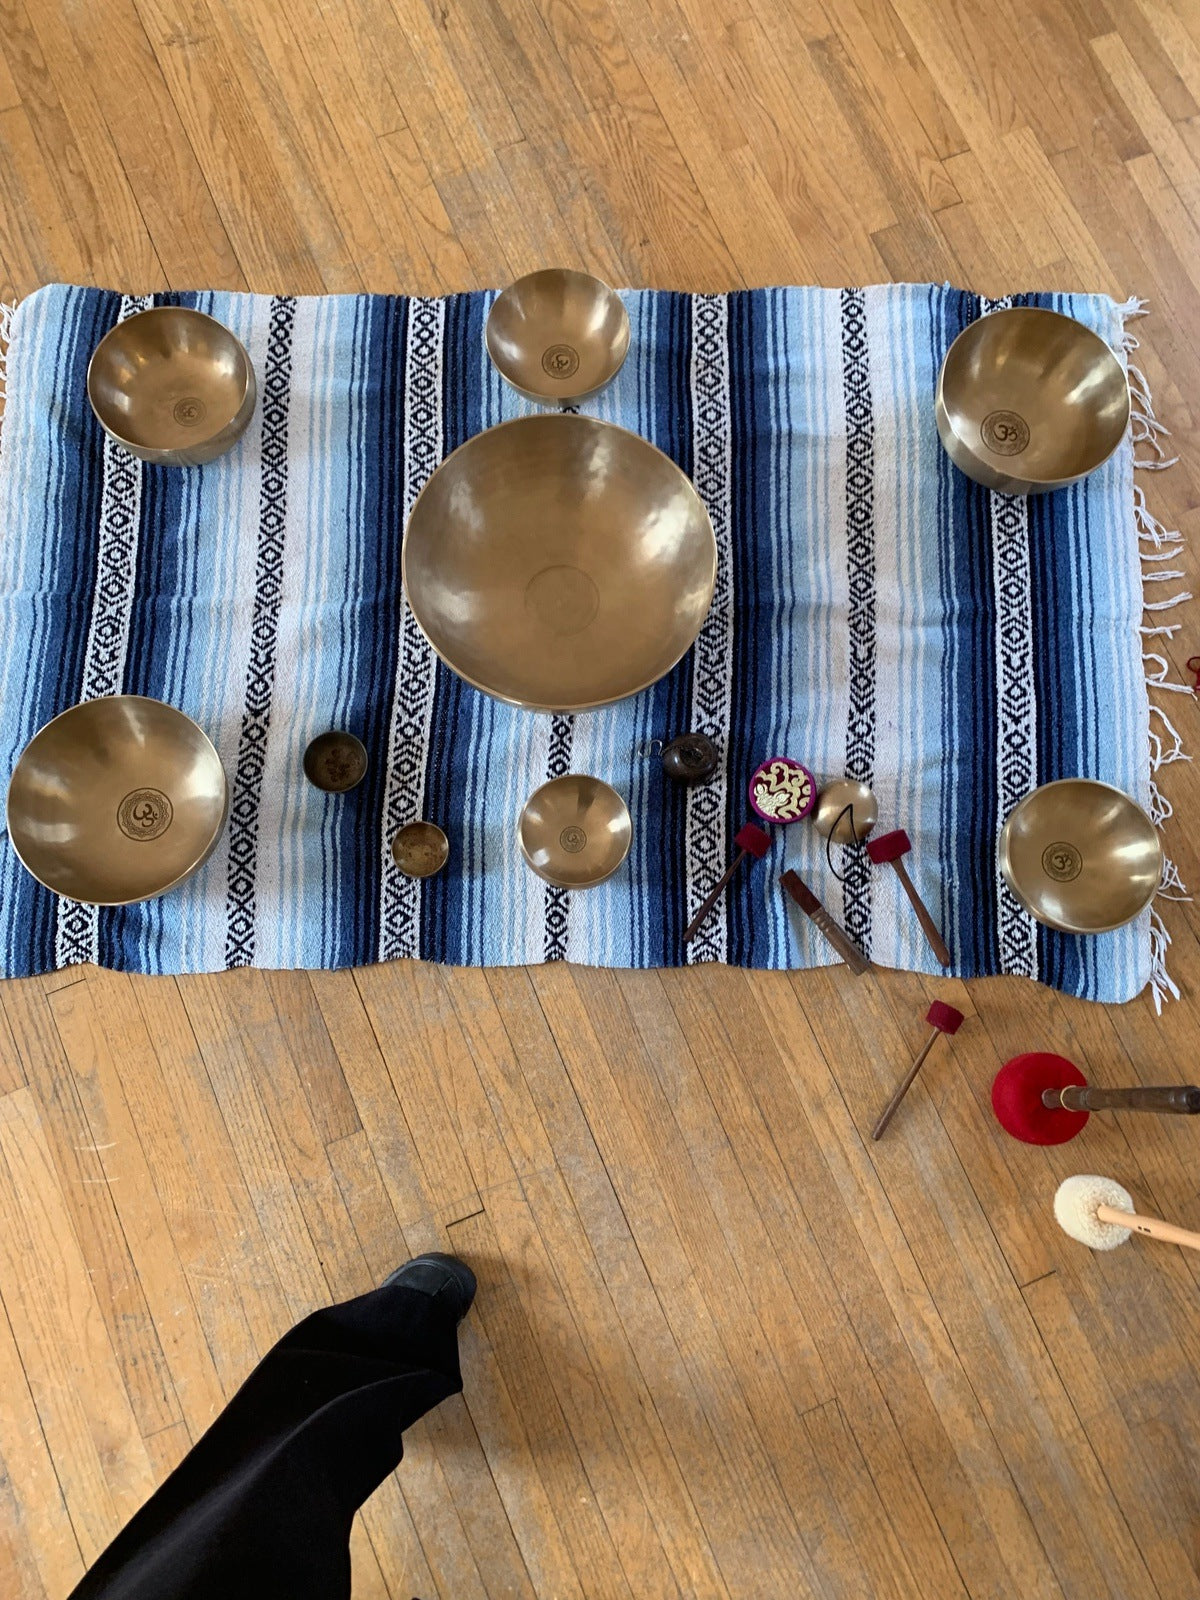 7 Tibetan Singing Bowls